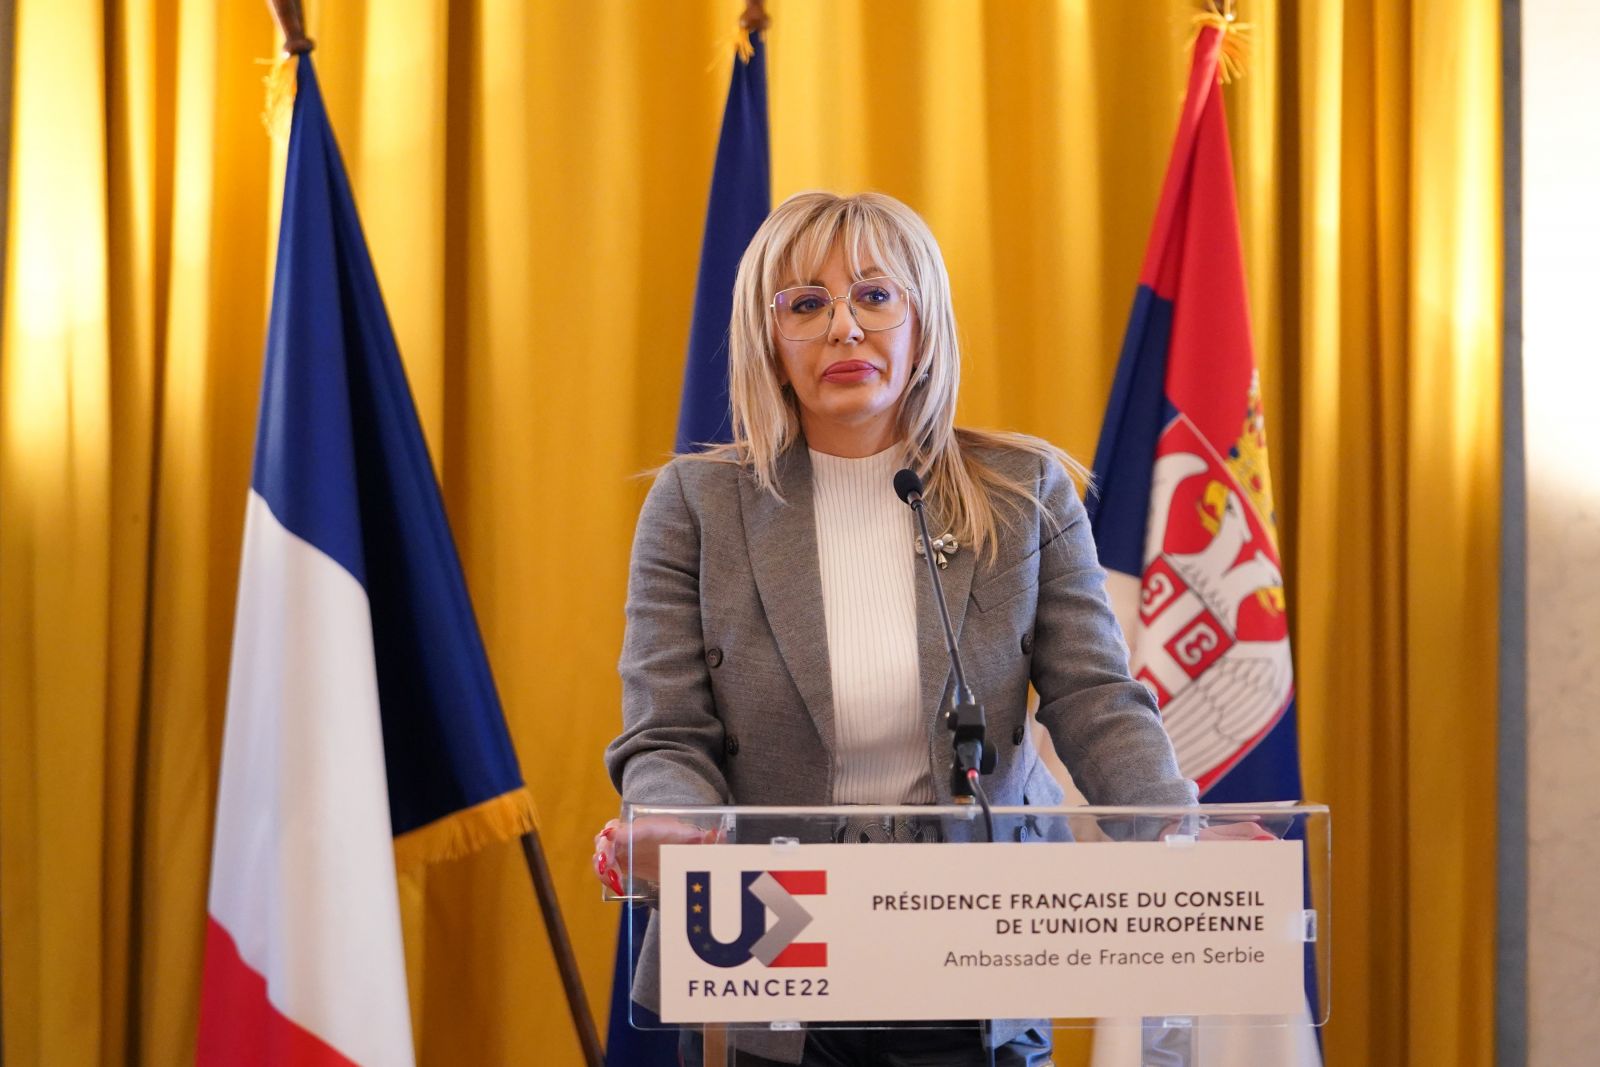 J. Joksimović: Reforms will maintain same pace during French presidency